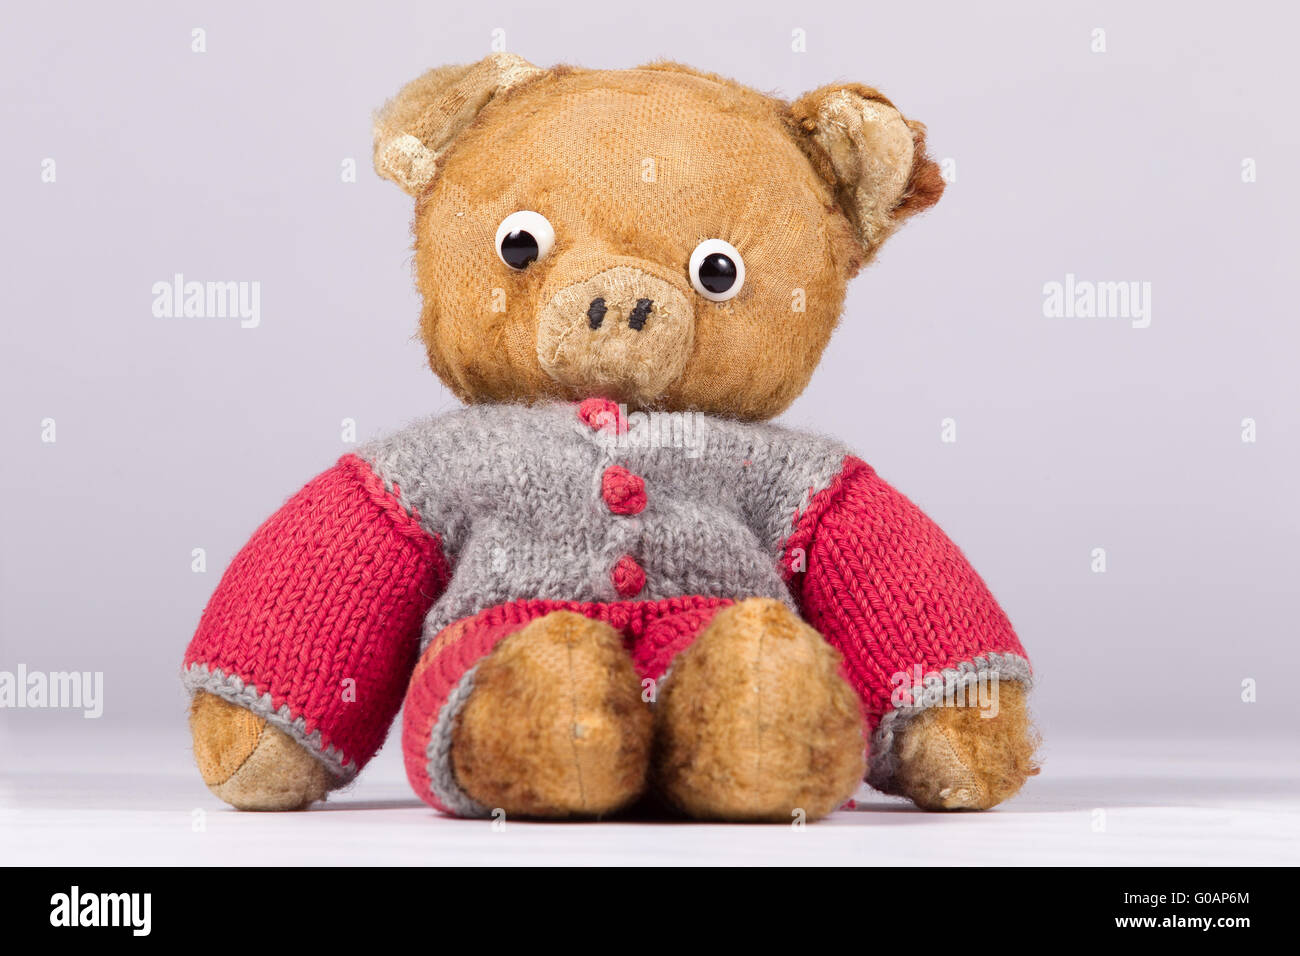 An old teddy bear Stock Photo